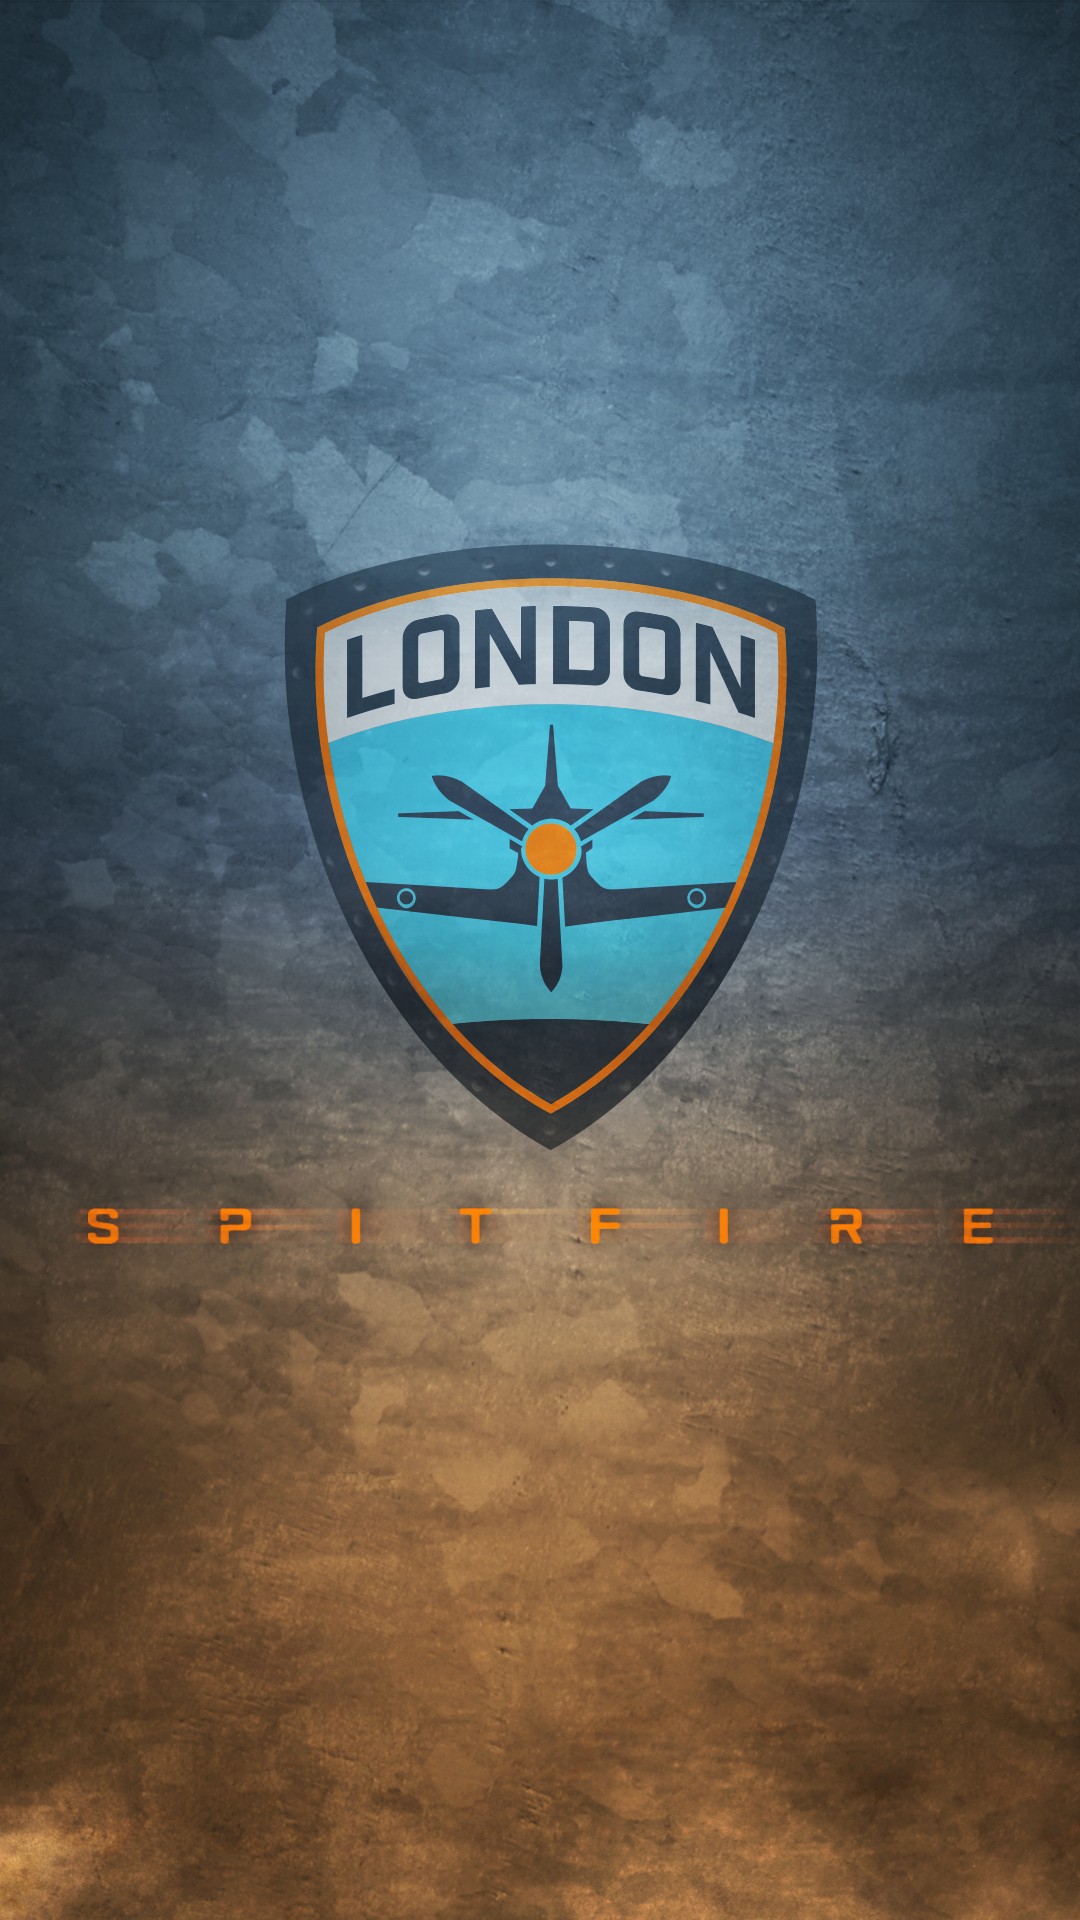 London Spitfire, Overwatch League, Overwatch, E sports Wallpaper